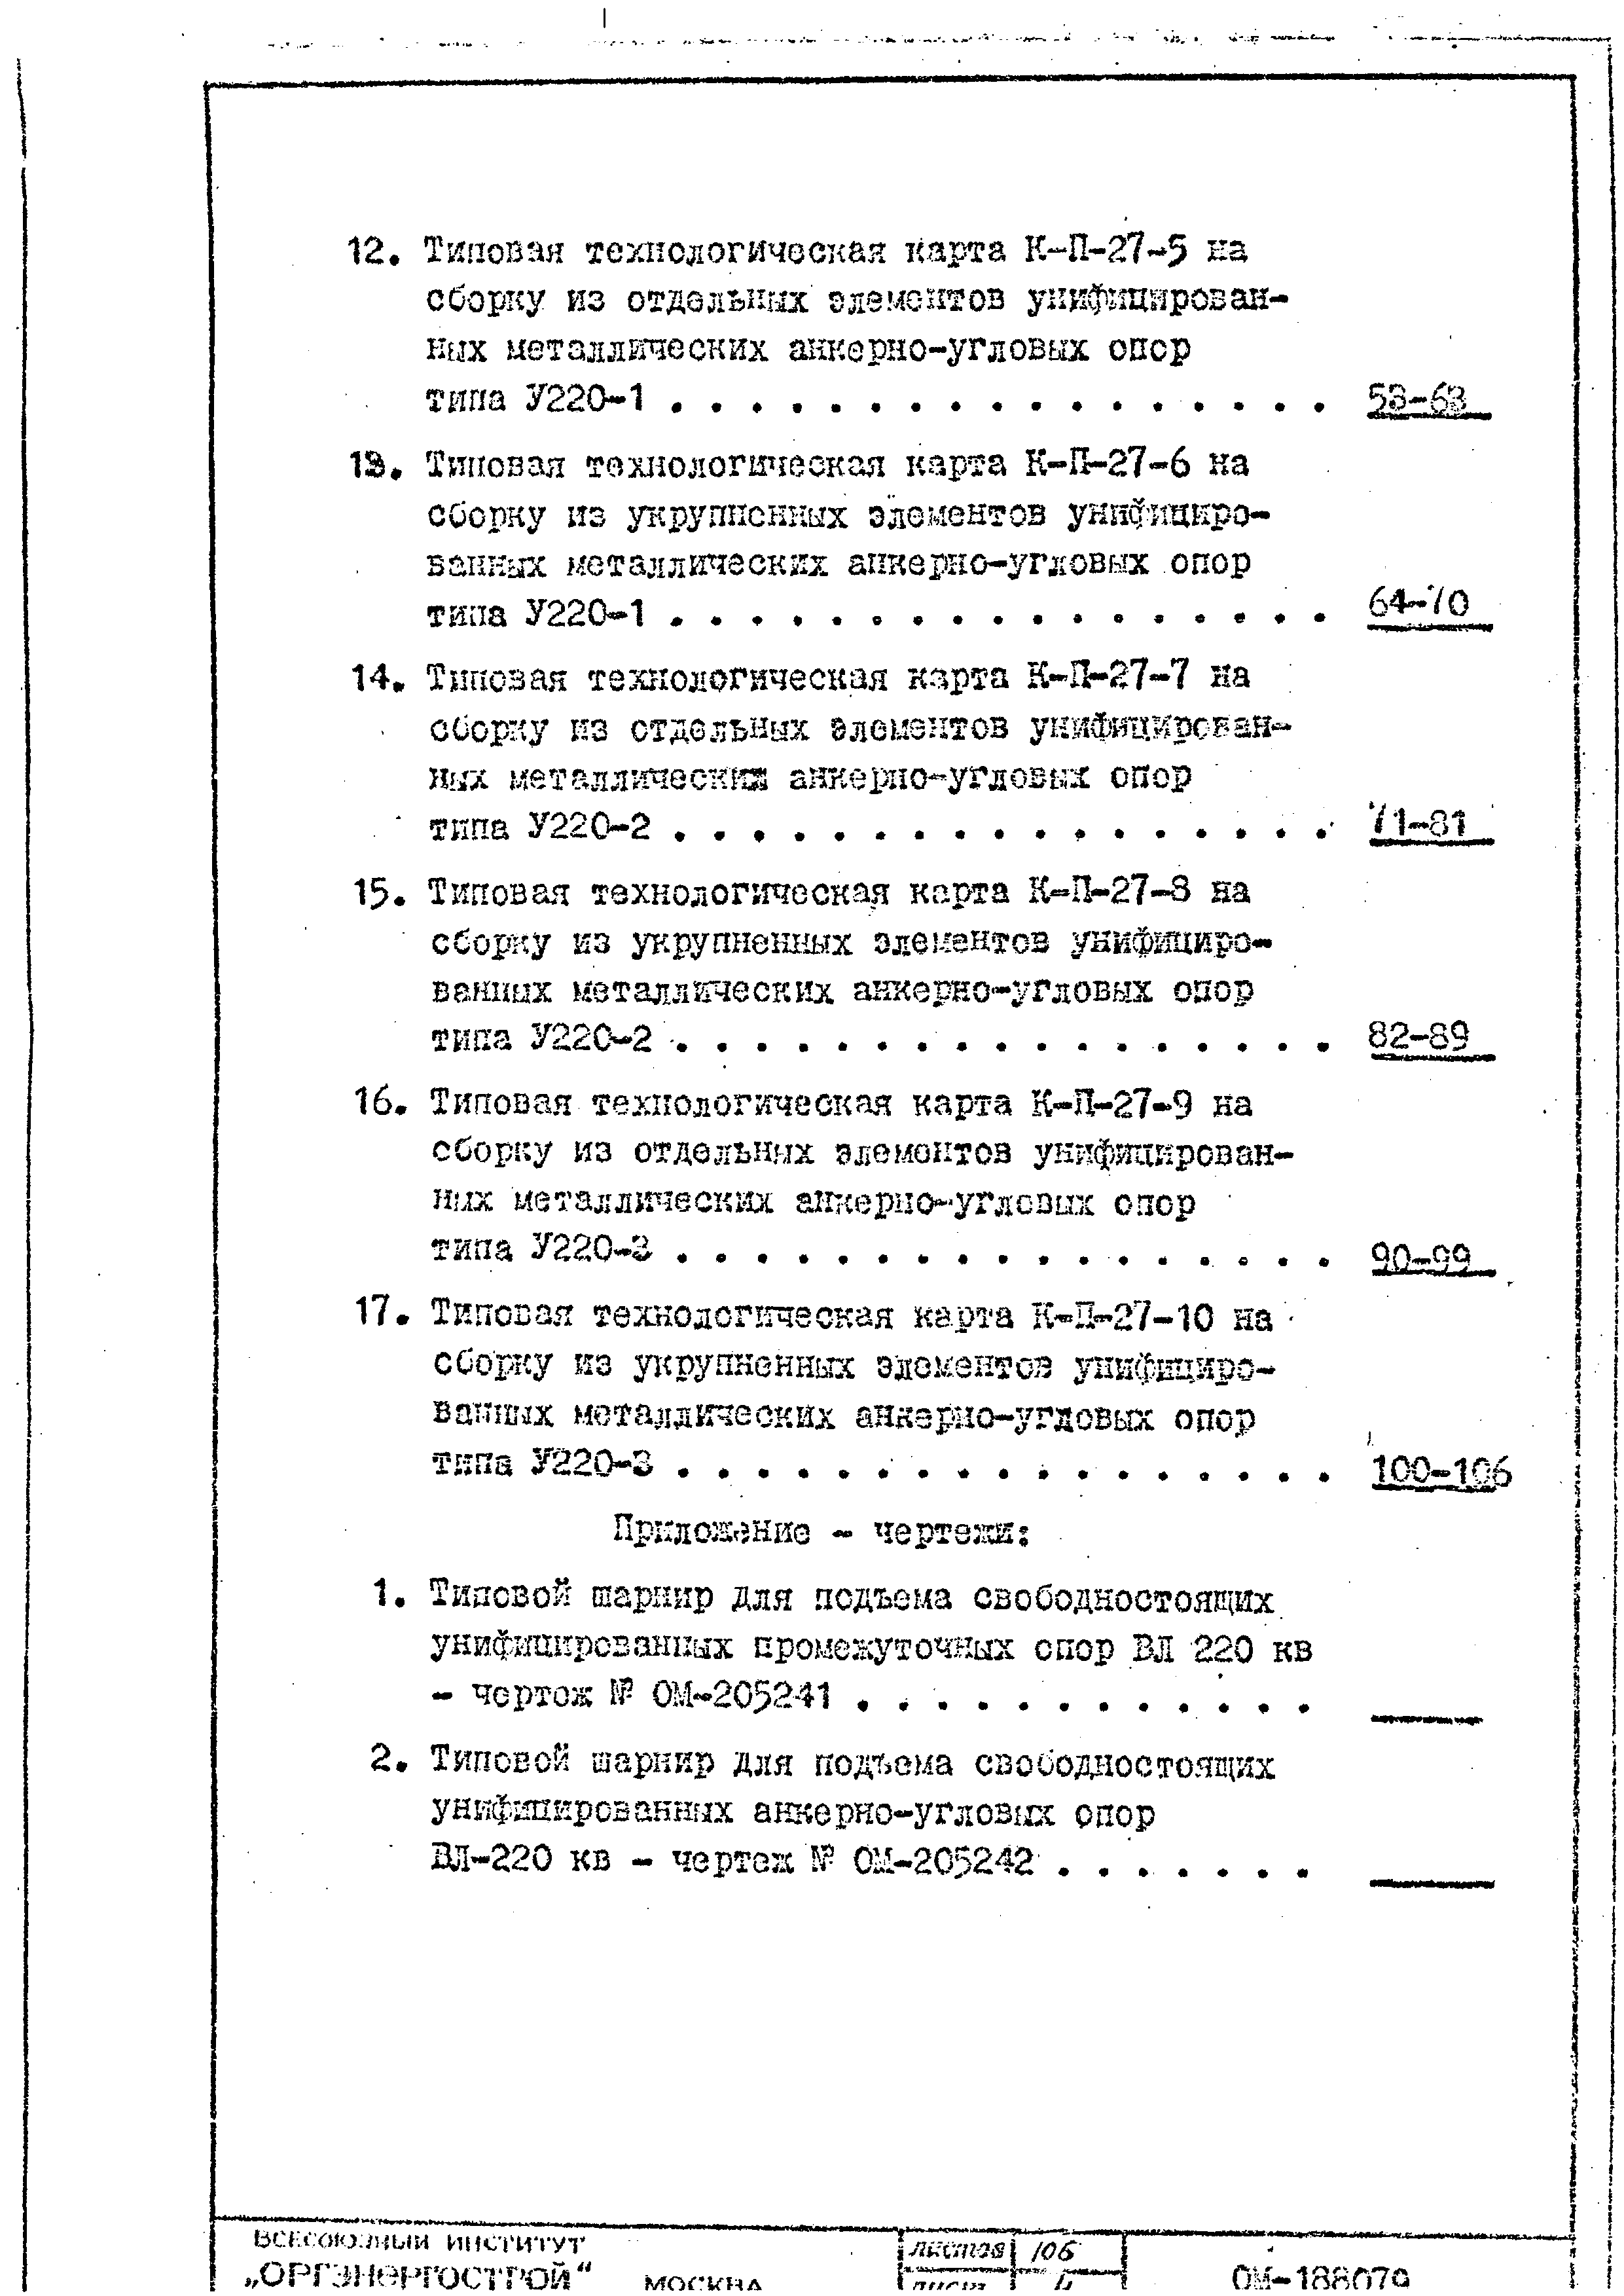 ТТК К-II-27-10